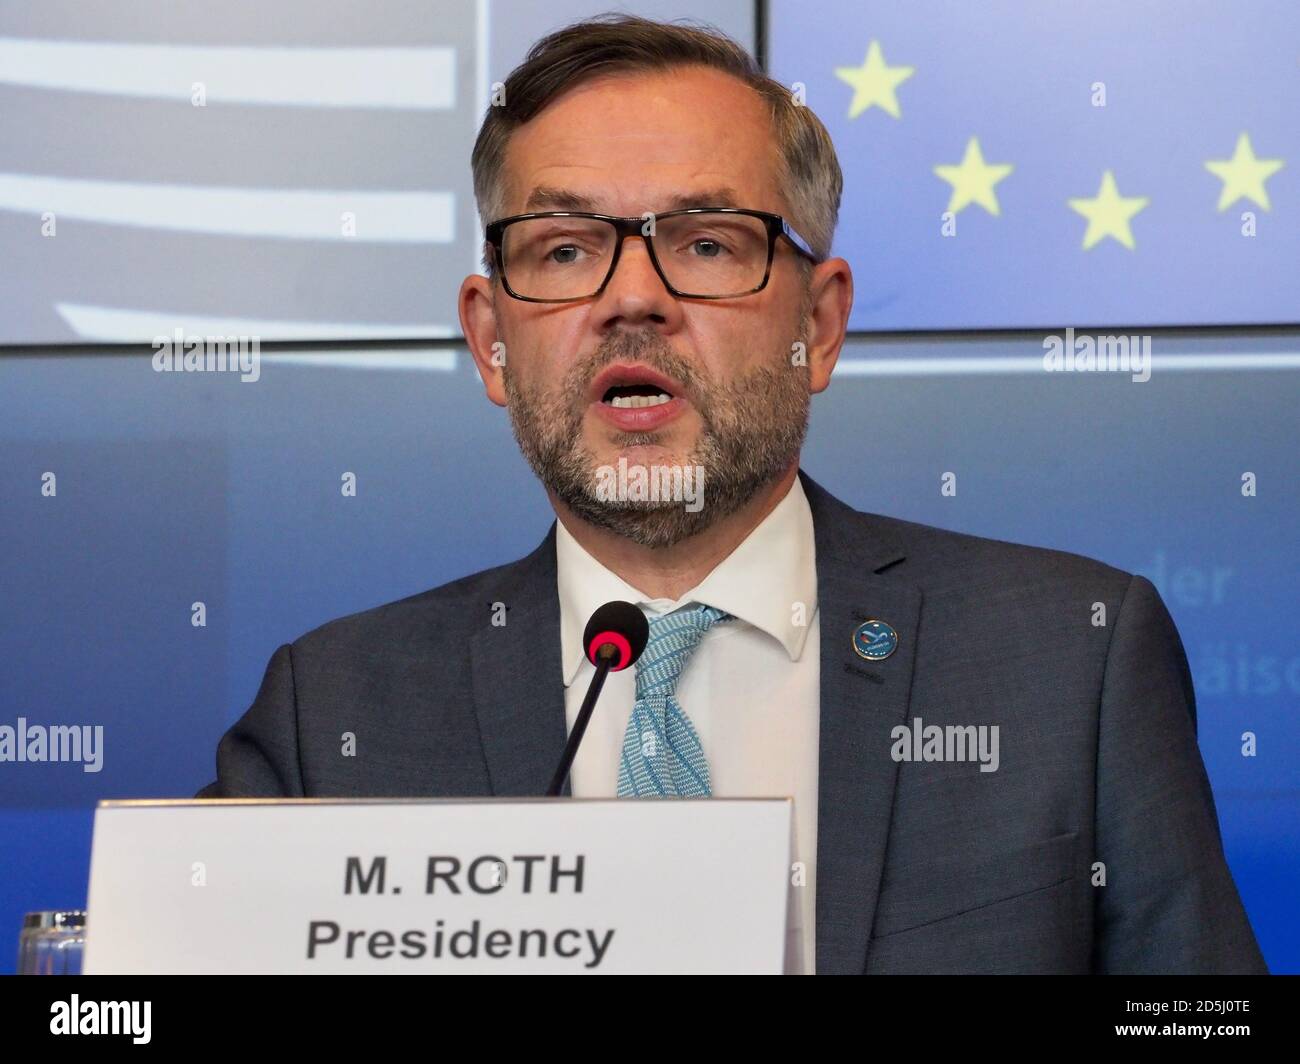 (201013) -- LUXEMBOURG, le 13 octobre 2020 (Xinhua) -- Michael Roth, ministre d'État pour l'Europe au ministère fédéral allemand des Affaires étrangères, assiste à une conférence de presse à Luxembourg, le 13 octobre 2020. Les États membres de l'Union européenne (UE) ont adopté mardi un code couleur commun pour définir le niveau de risque lié à l'épidémie du coronavirus, région par région, afin d'éviter la fragmentation et la perturbation. (Union européenne/document via Xinhua) Banque D'Images